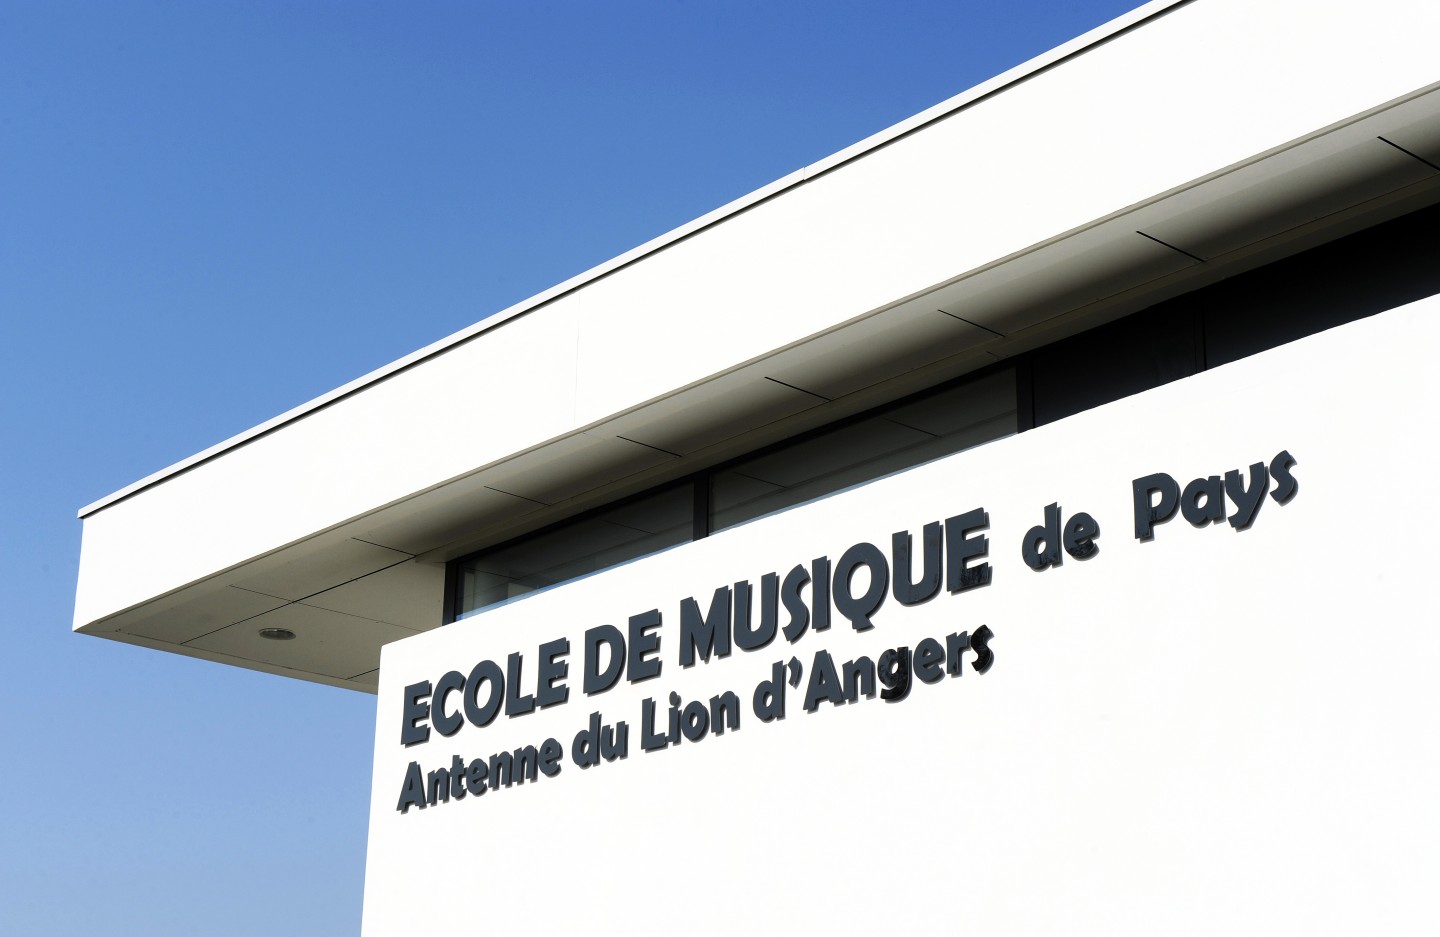 Laurent Vié - Ecole de musique Lion d'Angers